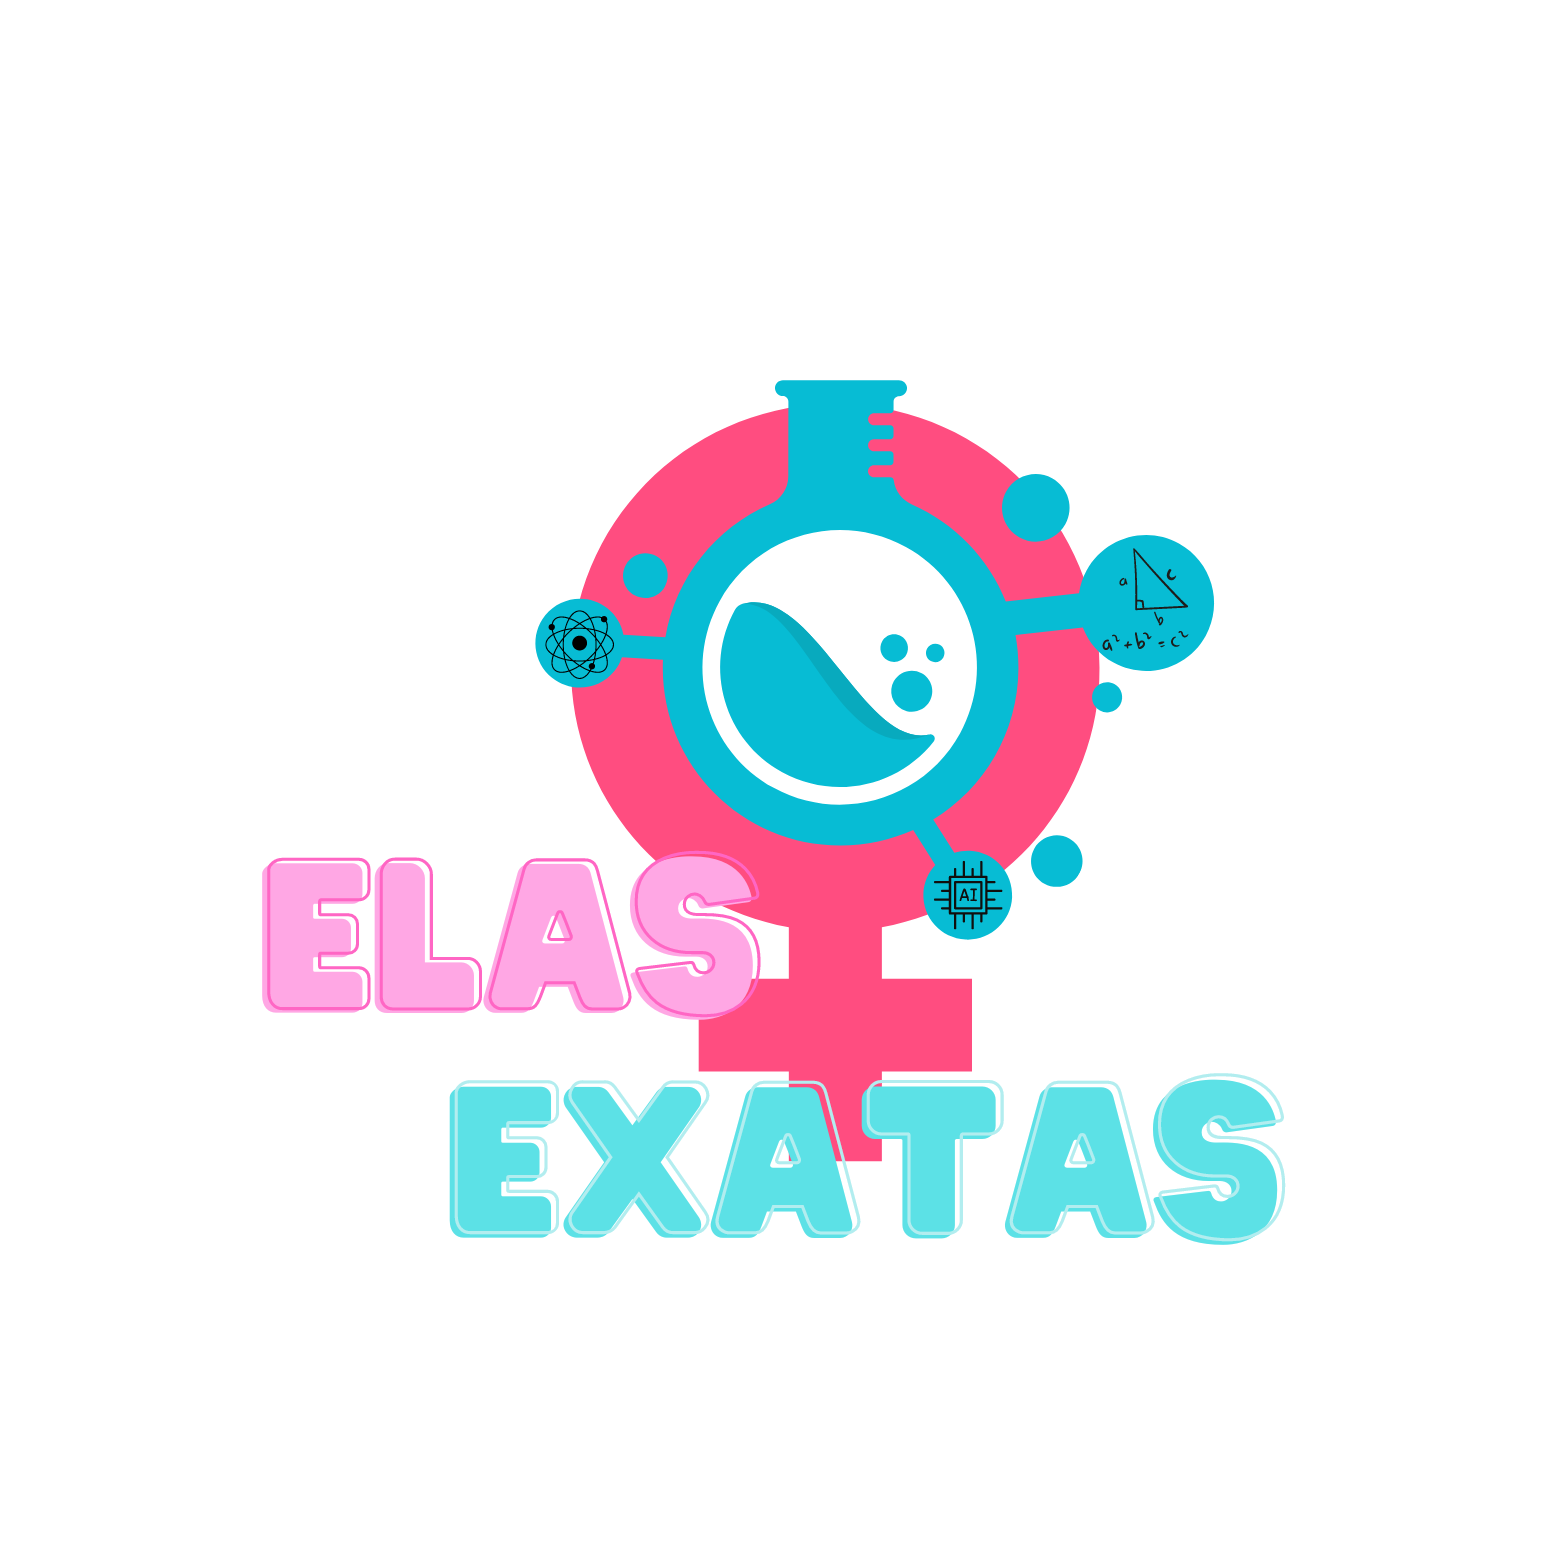 Elas_Exatas